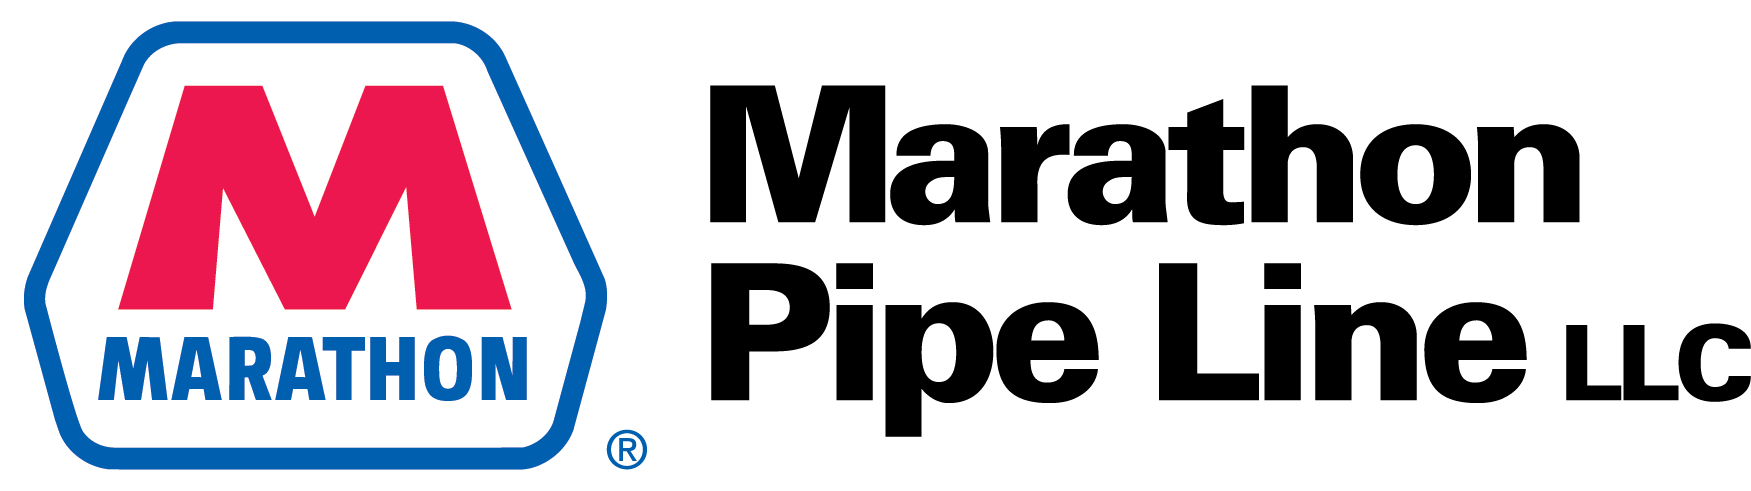 Marathon Pipeline